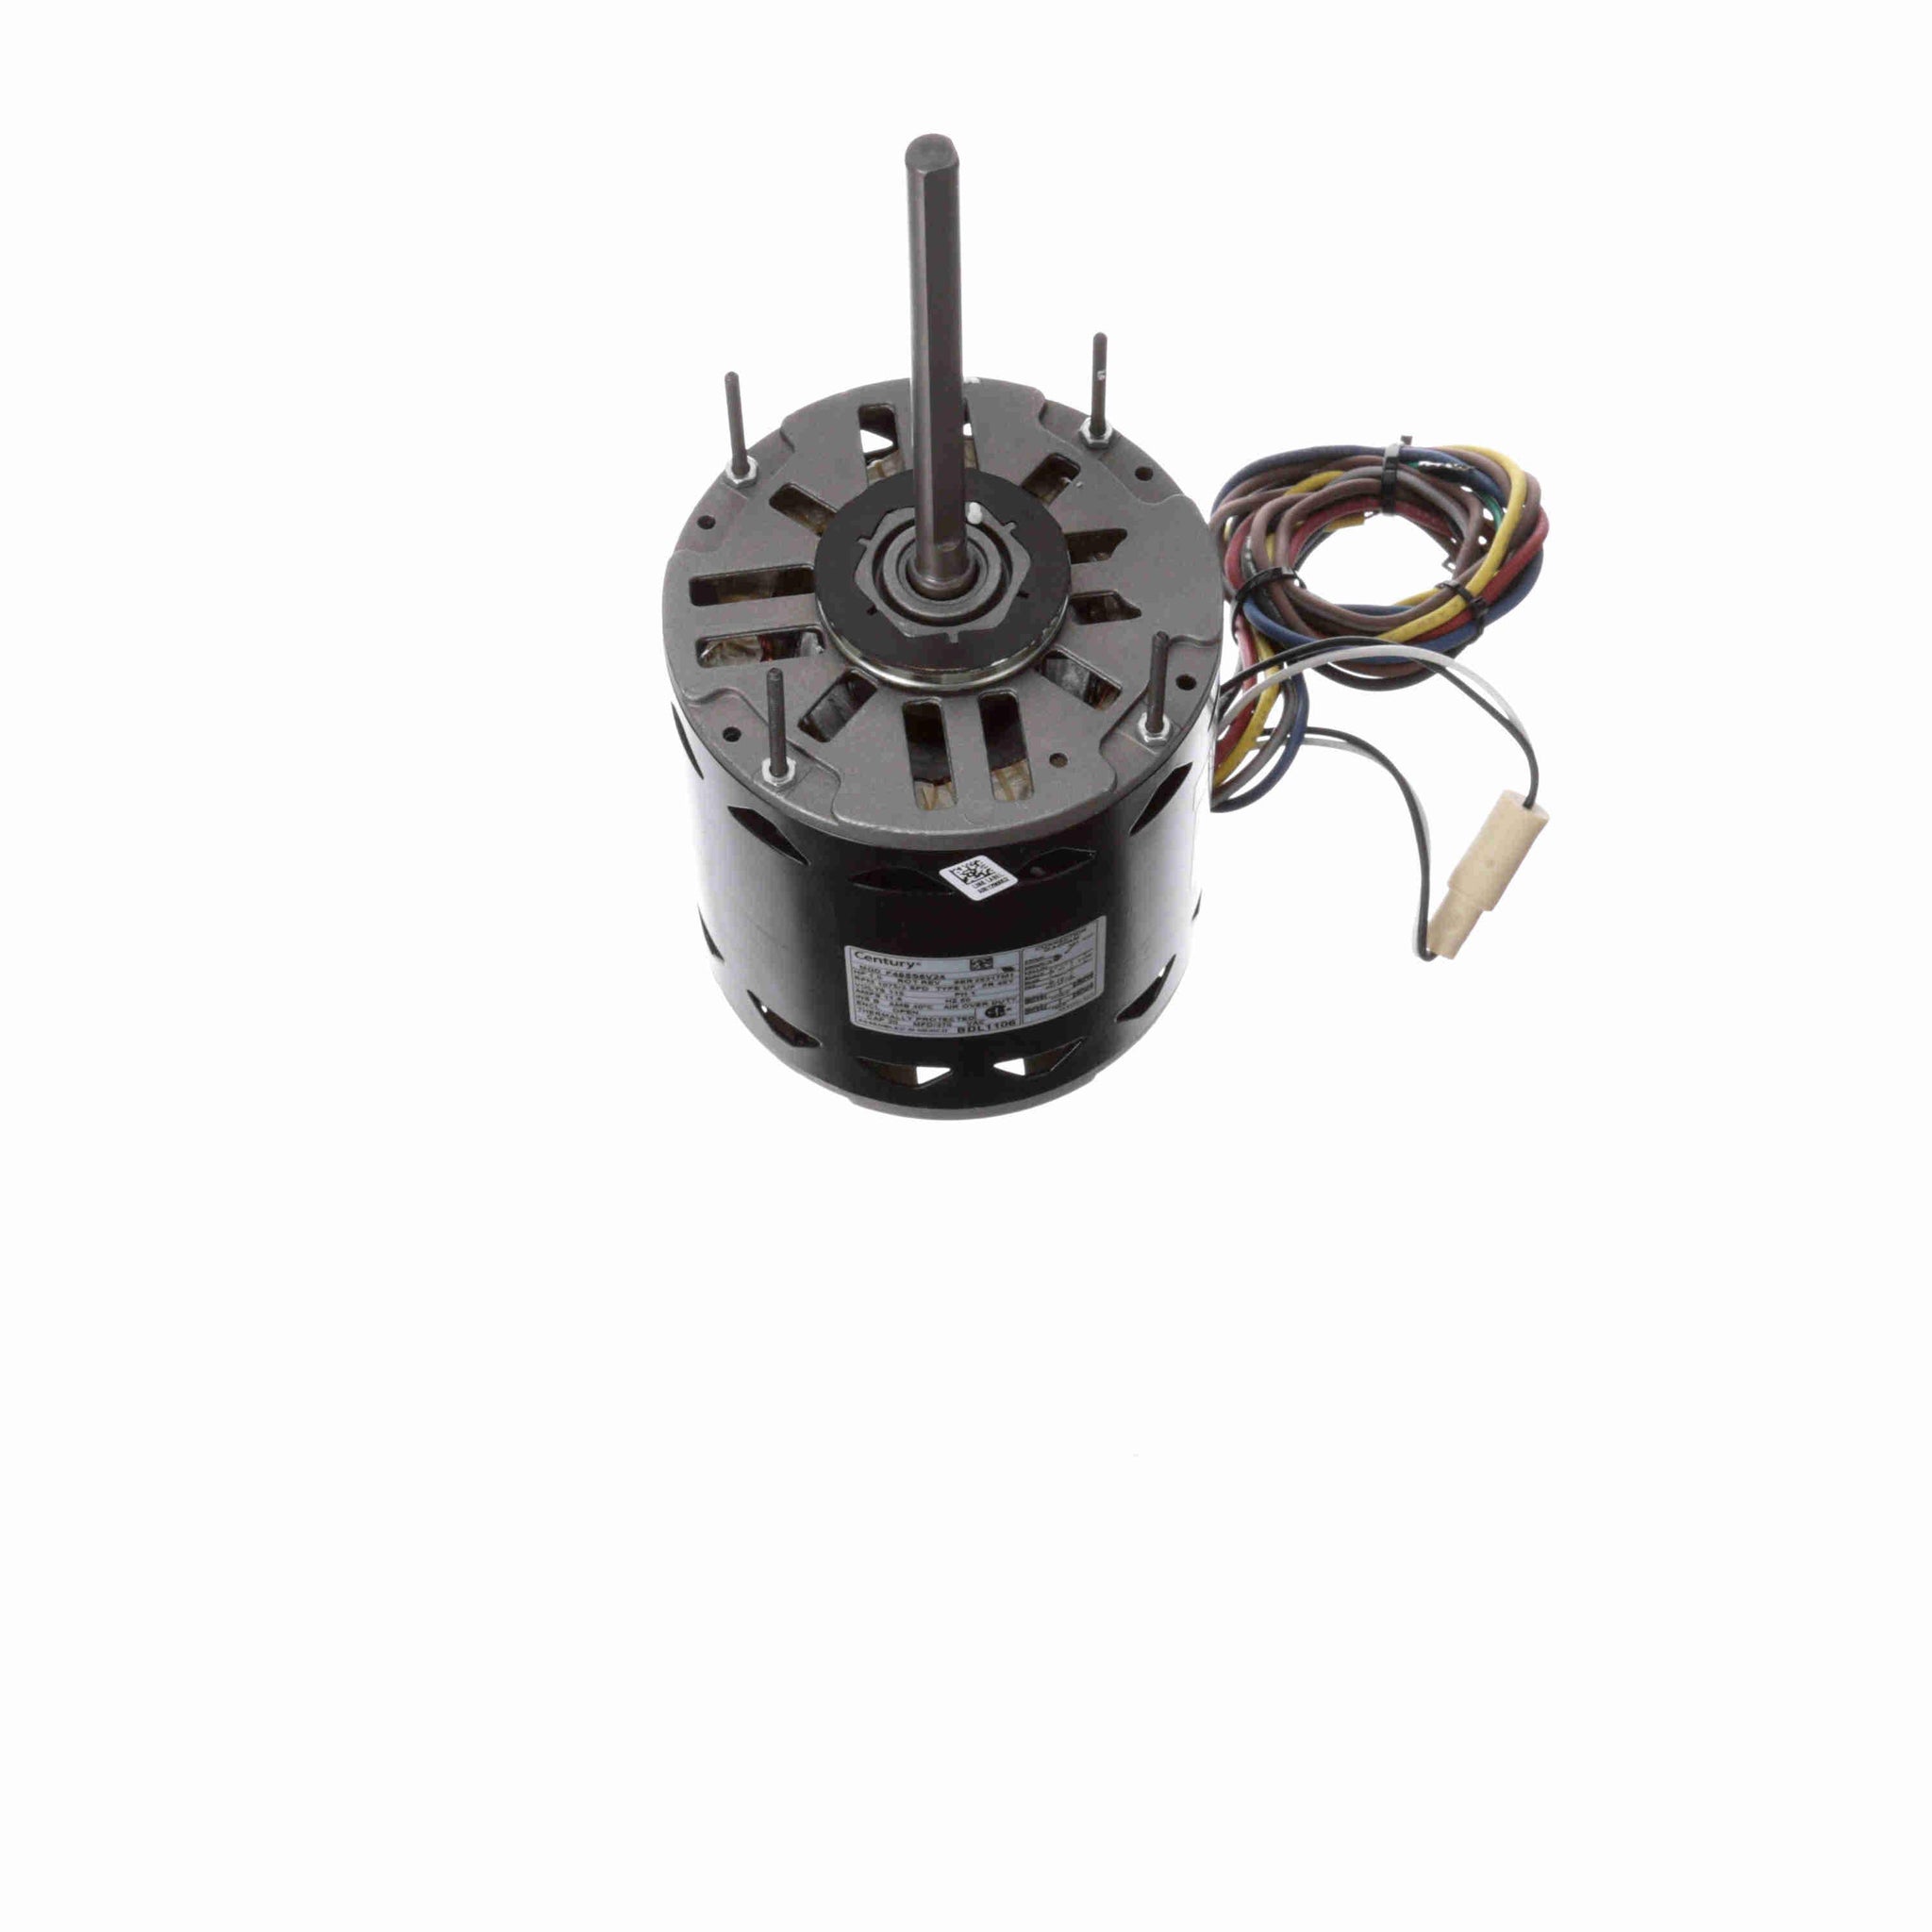 BDL1106 - 1 HP Fan & Blower Motor, 1075 RPM, 3 Speed, 115 Volts, 48 Frame, OAO - Hardware & Moreee